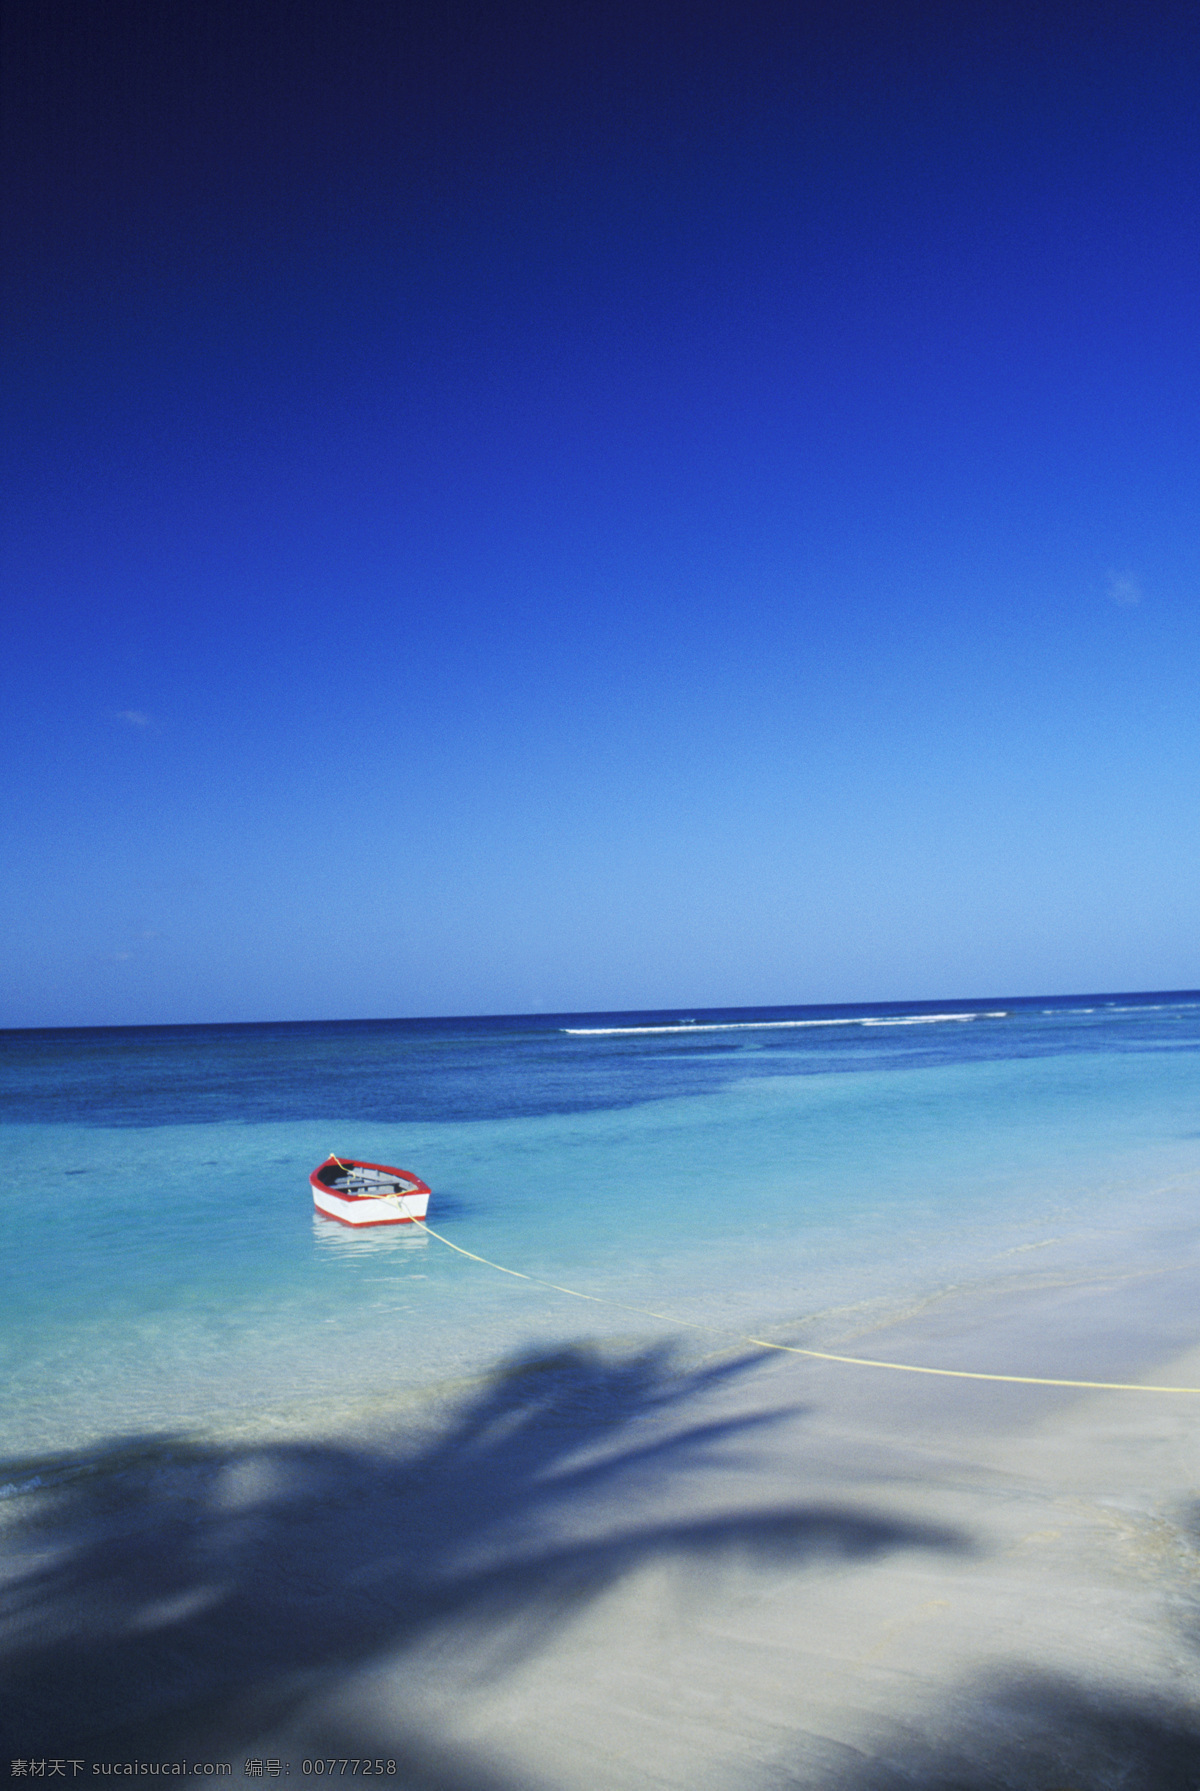 停 海岸 小船 船只 海浪 大海 漂亮 美景 风景 岸边 加勒比海岸 高清图片 大海图片 风景图片